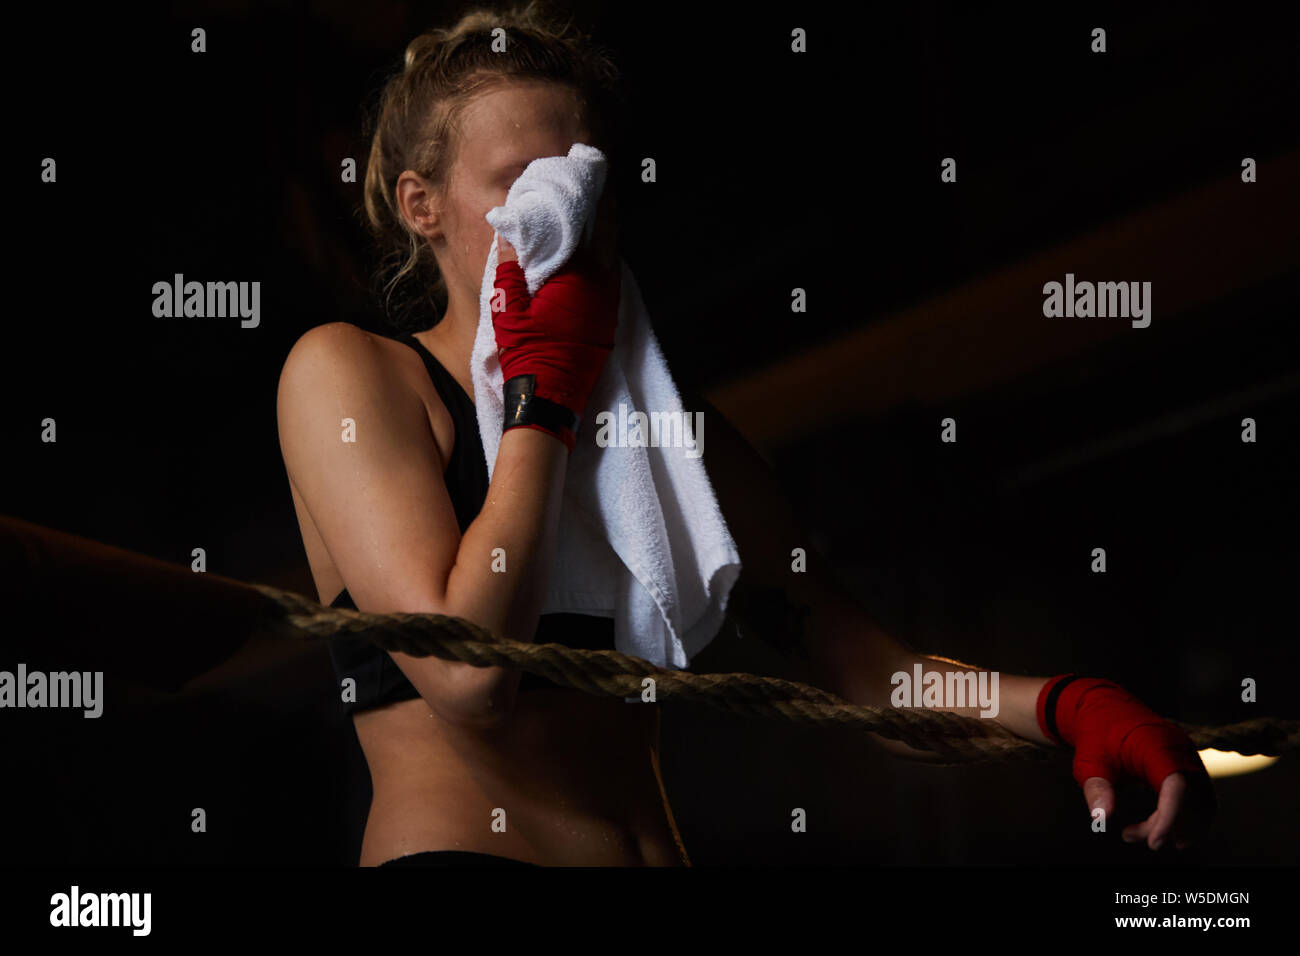 Dunkel getönt Portrait von harten Sportlerin wischen Schweiß mit Handtuch nach Praxis, Kopie Raum Stockfoto